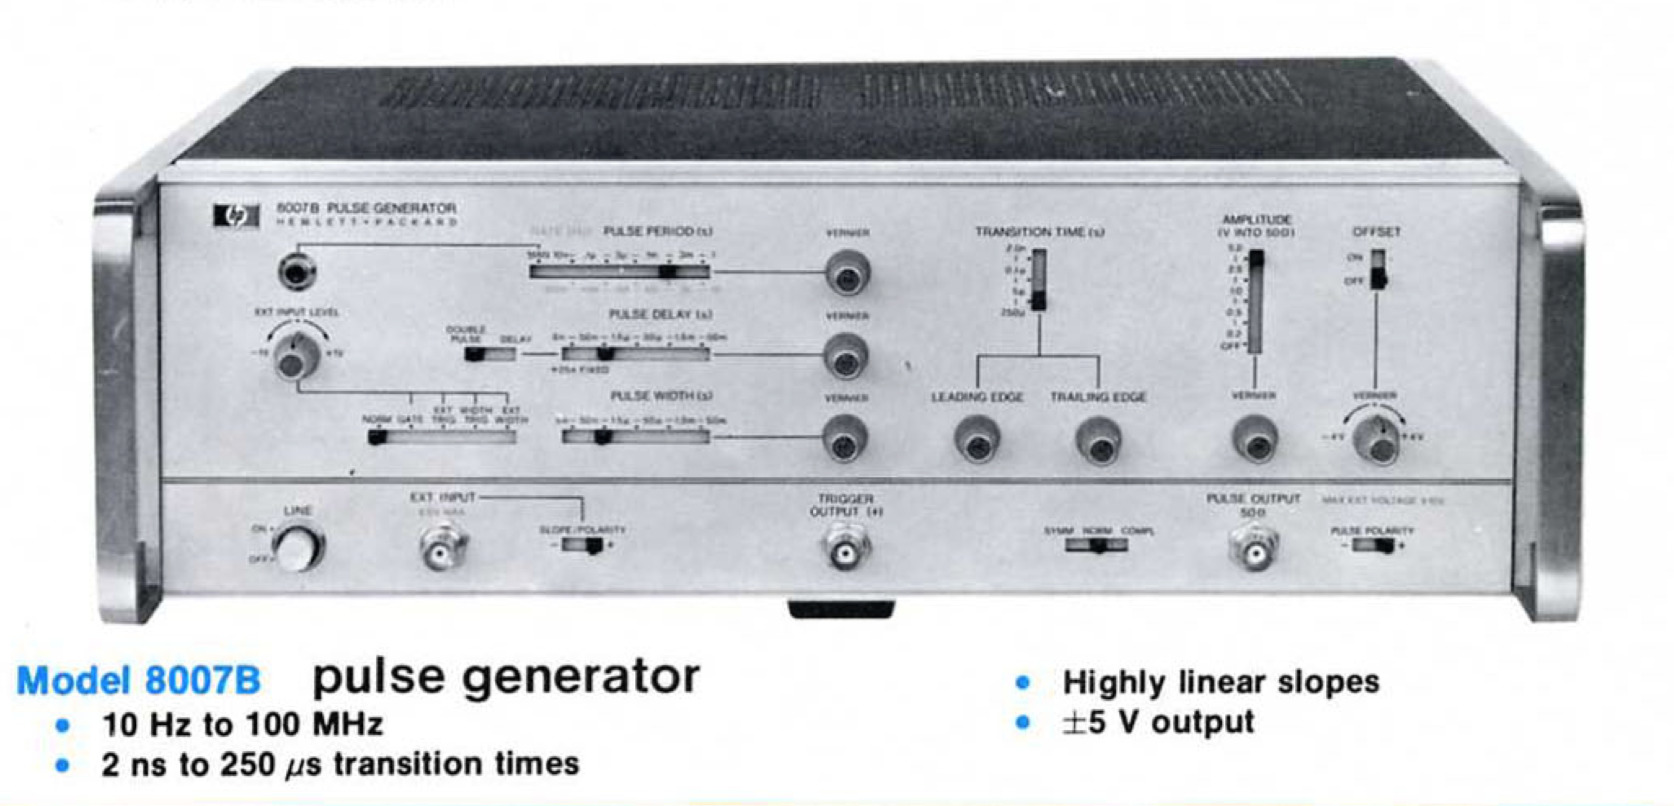 HP 8007B pulse generator in pulse generator catalog